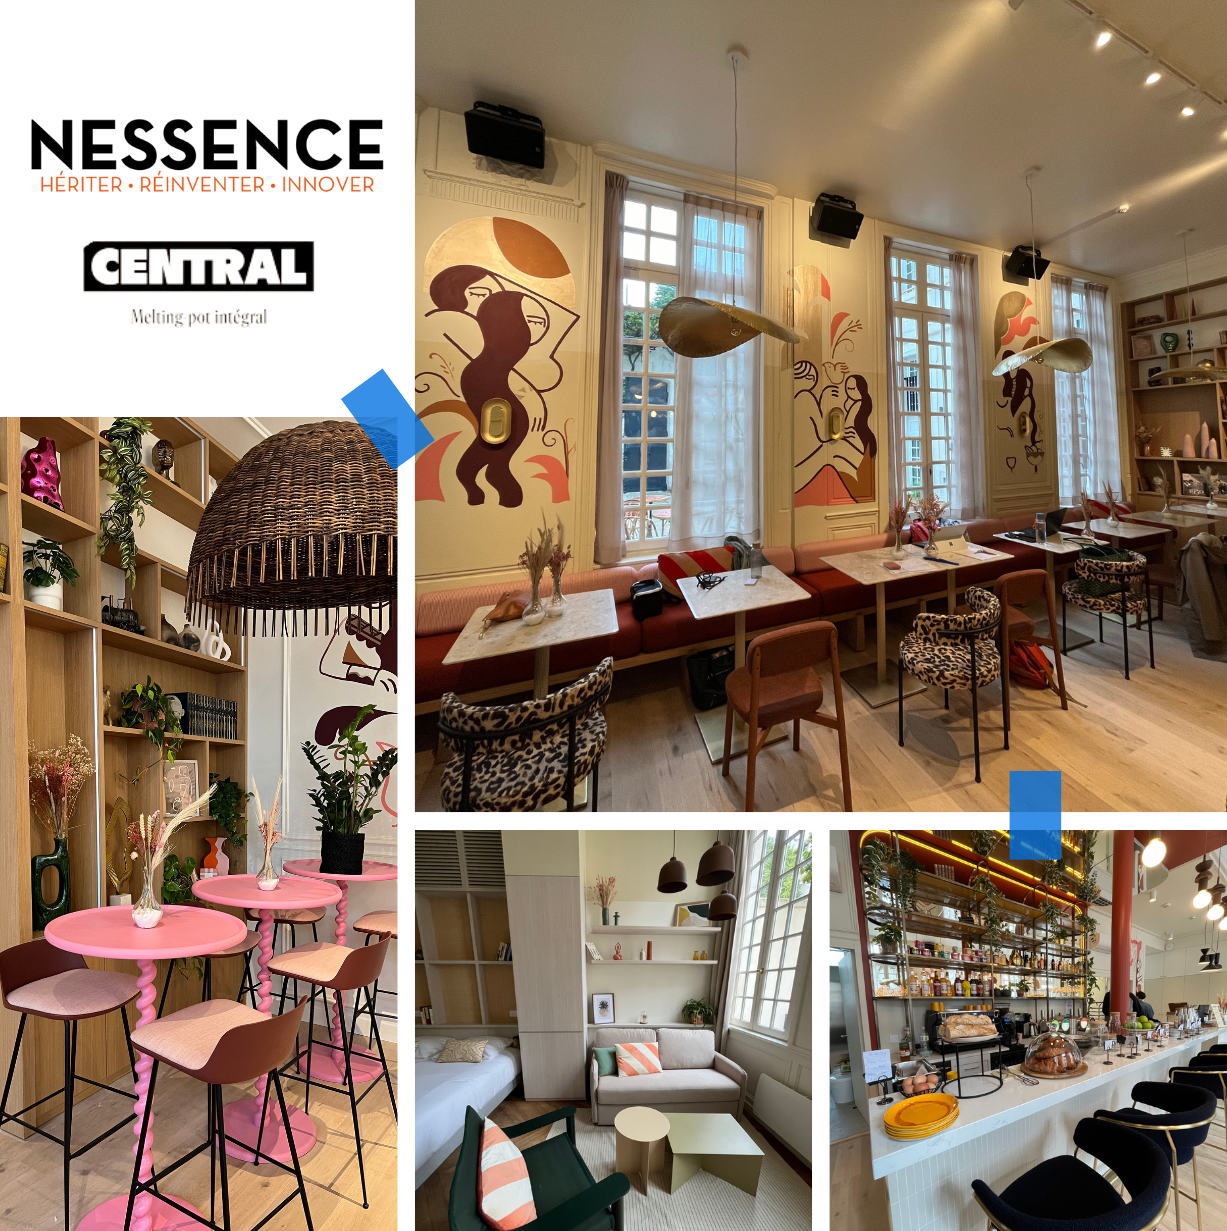 Sélection de photos du projet Central de Nessence, dont la mission est de créer l’expérience F&B&E d’un nouveau concept d’auberge de jeunesse trendy au cœur de bâtiments historiques